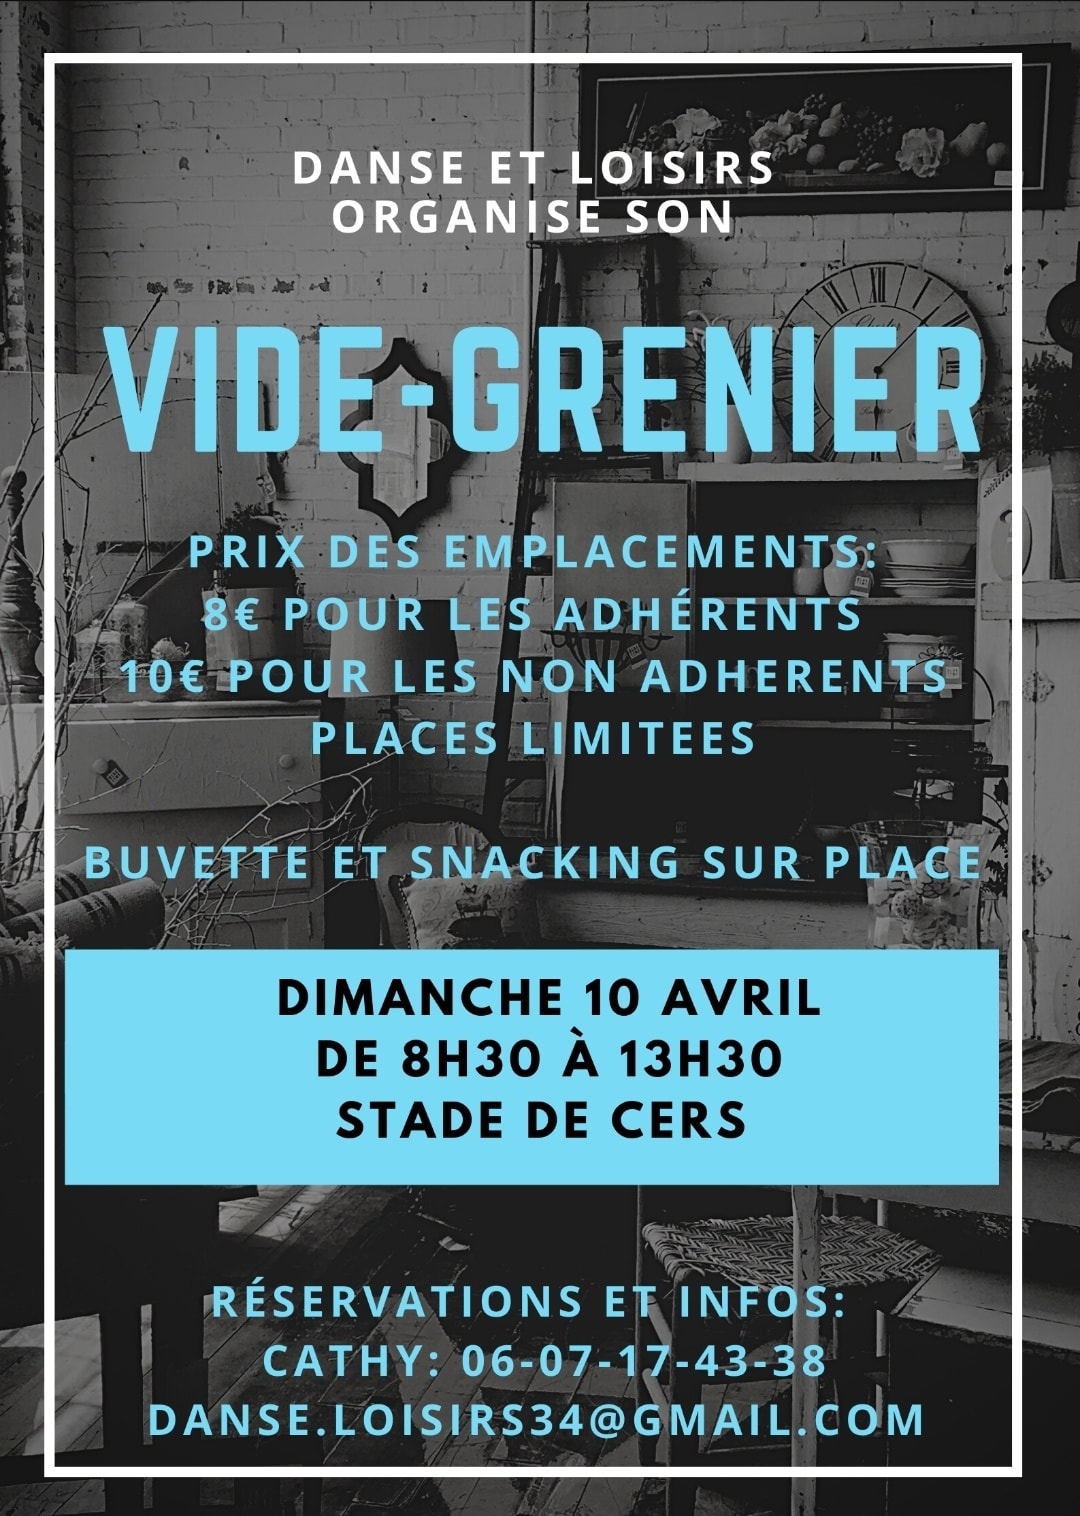 You are currently viewing Vide grenier organisé par Danse et Loisirs